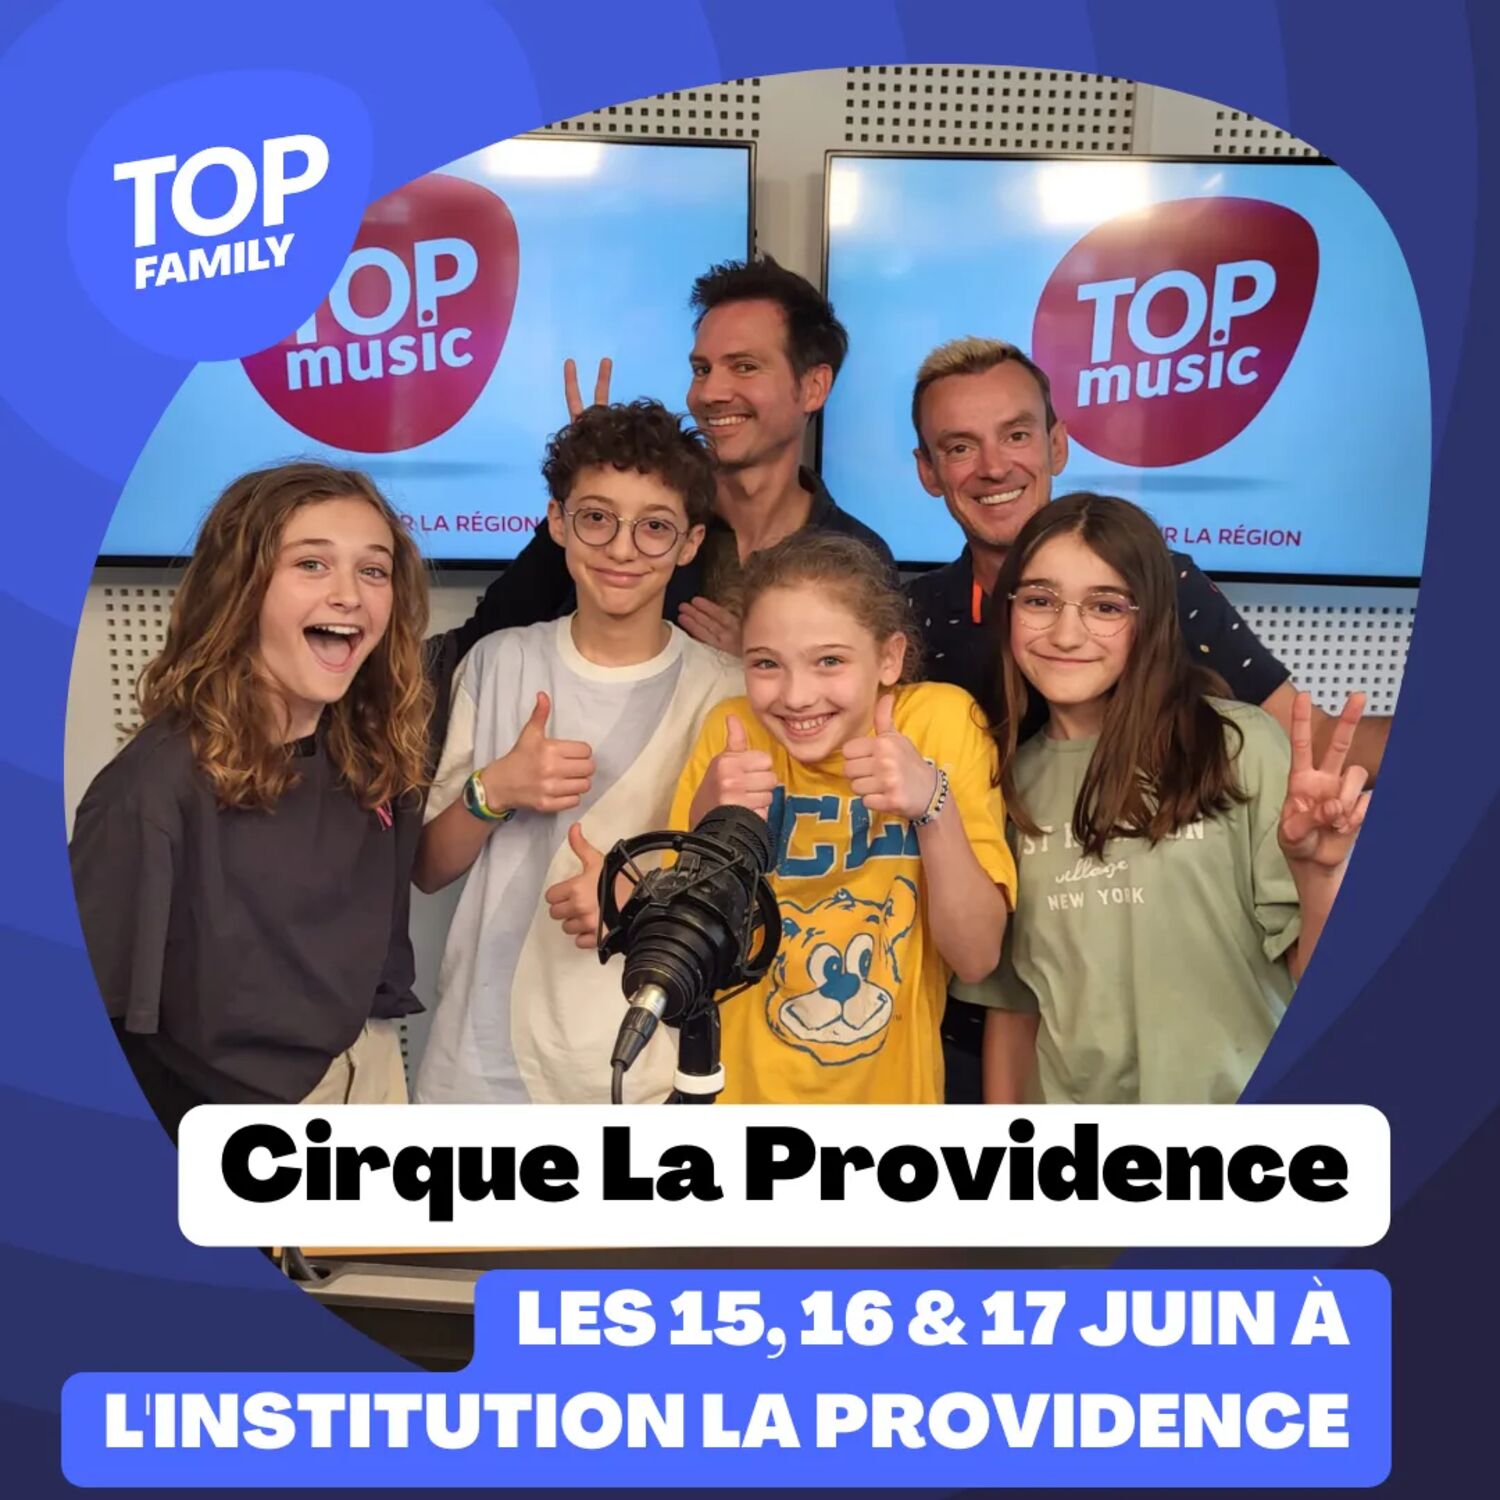 Top Family - Le Cirque La Providence revient les 15, 16 & 17 juin